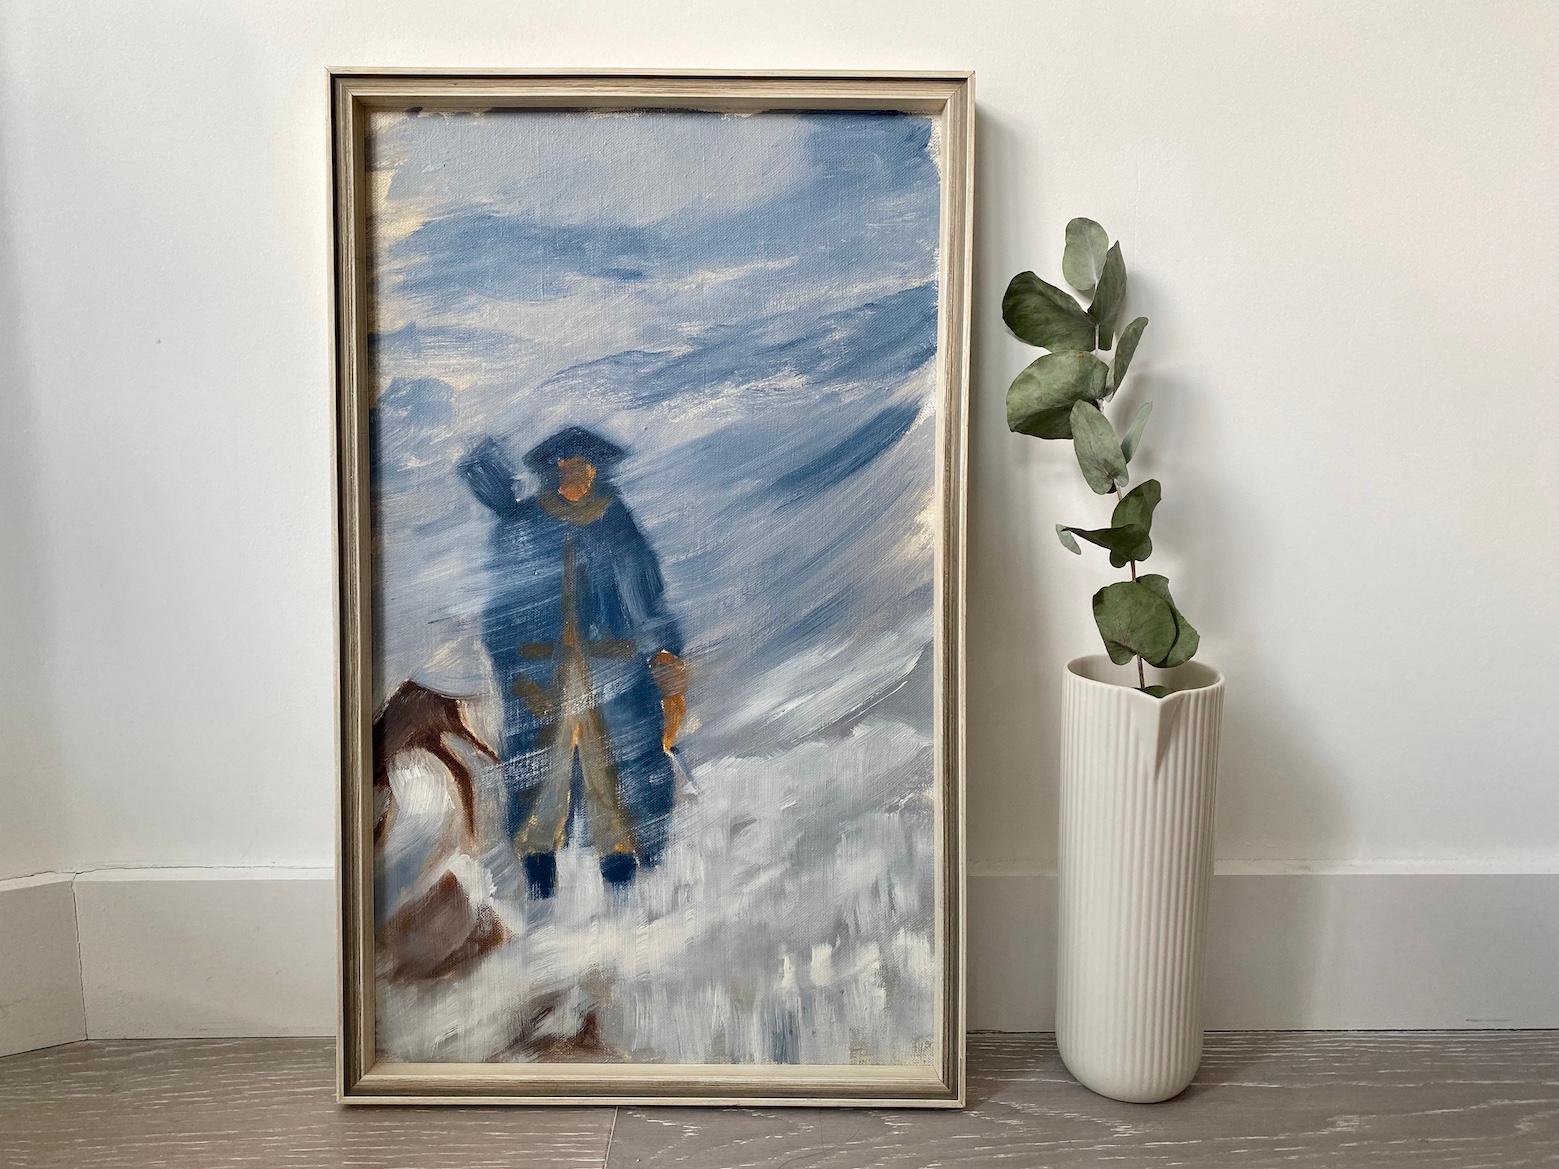 Scène d'hiver figurative abstraite vintage moderne du milieu du siècle dernier « Snow Storm », huile